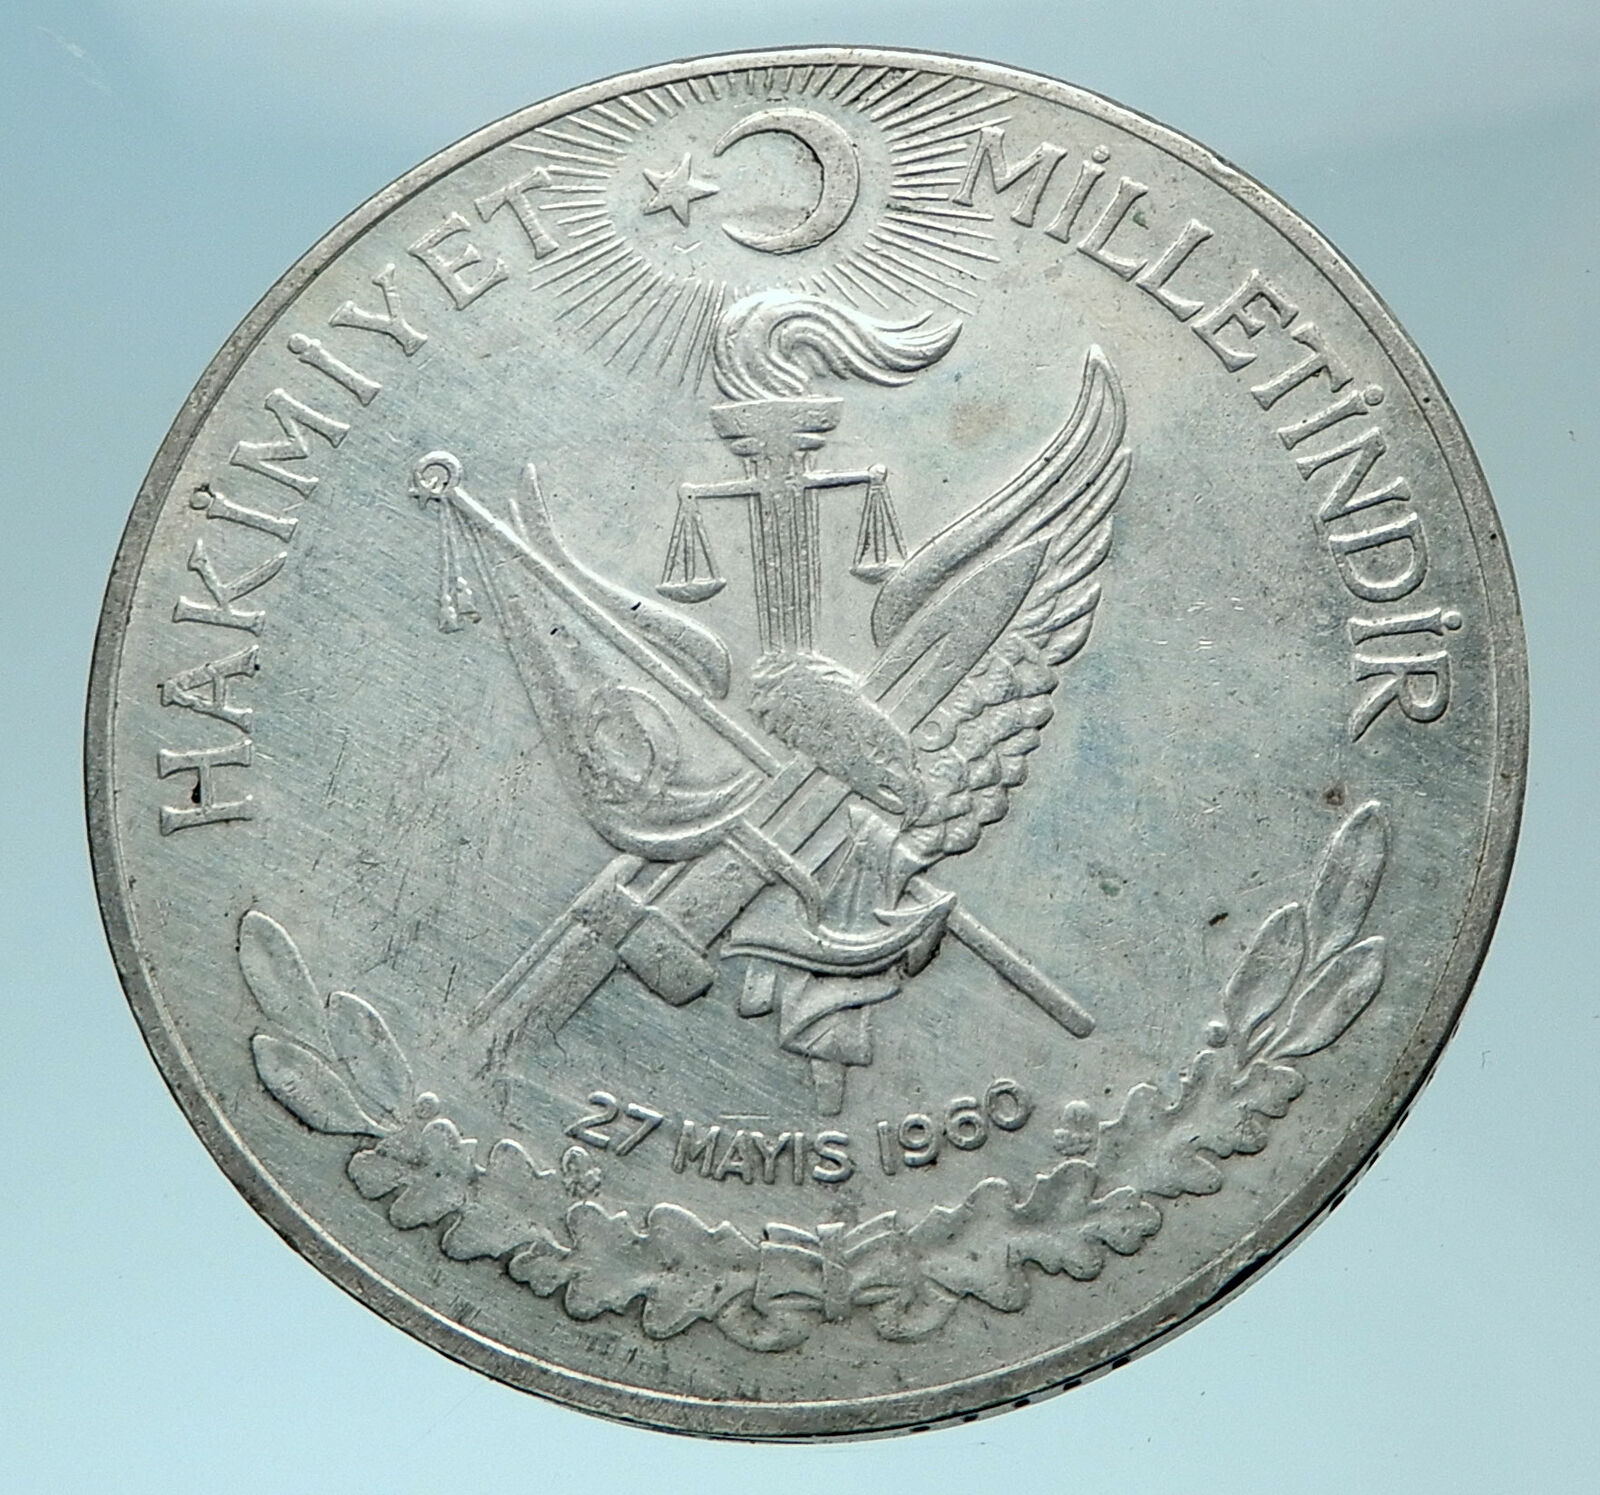 1960 Turkey 27 May REVOLUTION - Silver 10 Lira Coin Mustafa Kemal Atatürk i78763